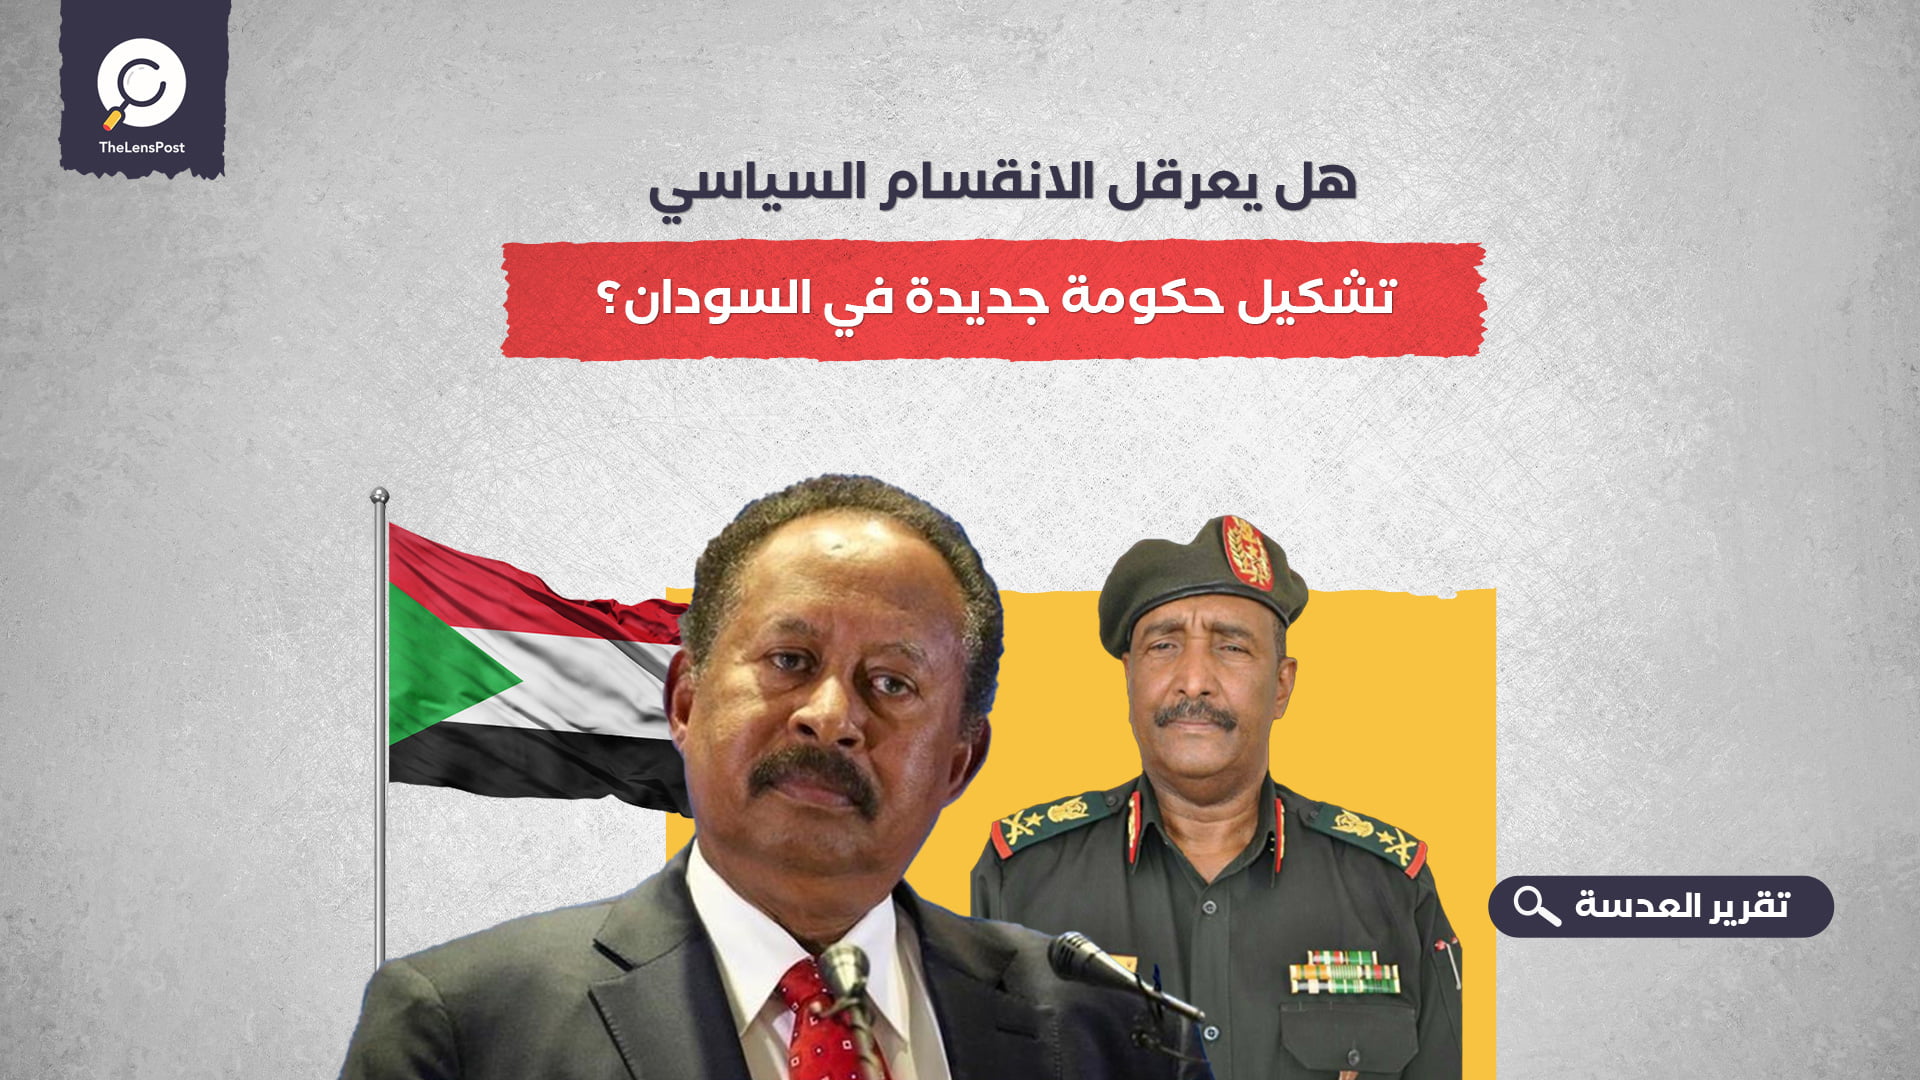 هل يعرقل الانقسام السياسي تشكيل حكومة جديدة في السودان؟